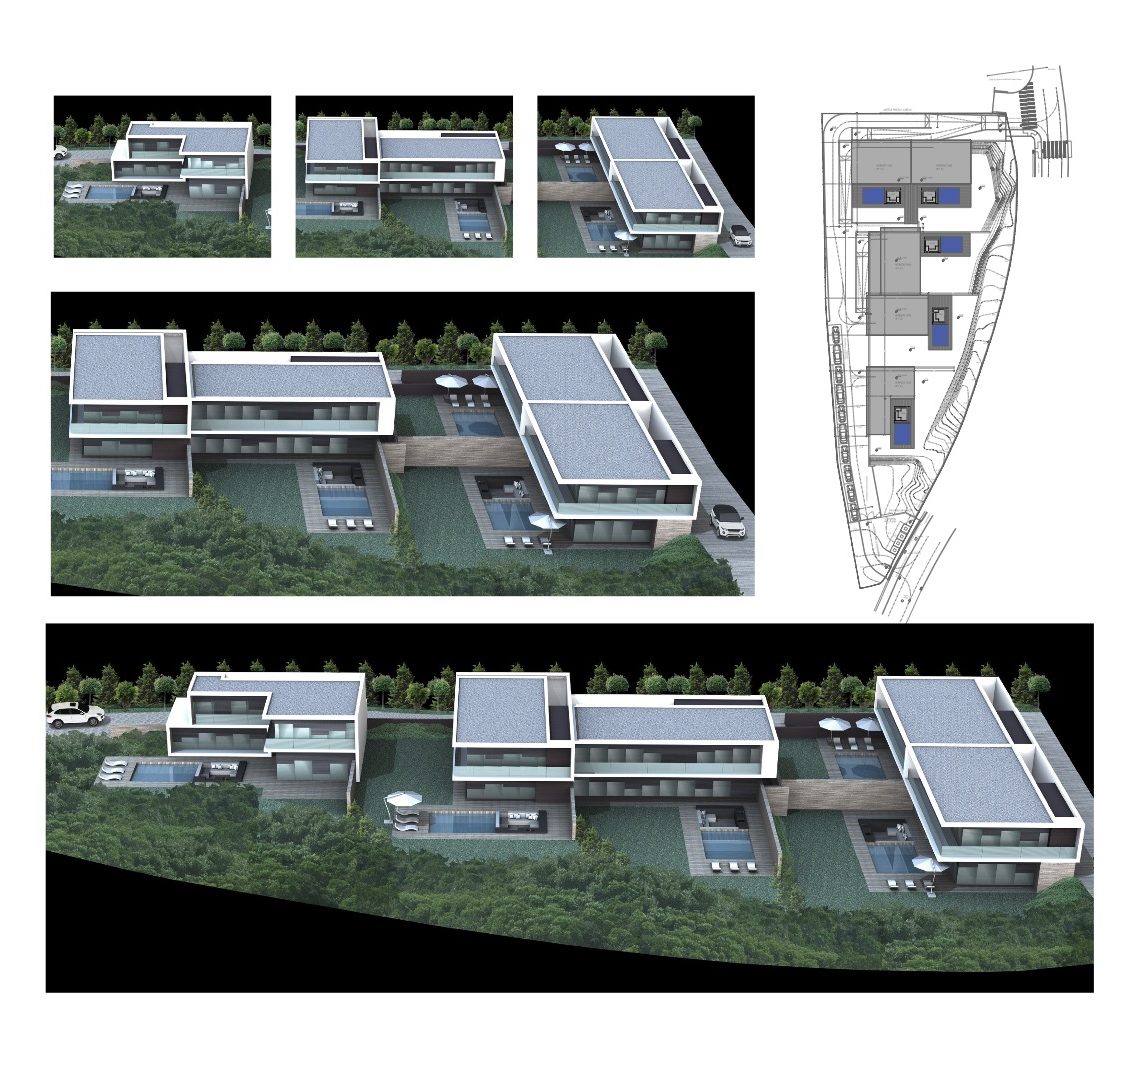 Condomínio Residencial Murches I, Cascais - quatro moradias unifamiliares - 1.350 m2 de área bruta de construção em parcela de 2.769 m2.